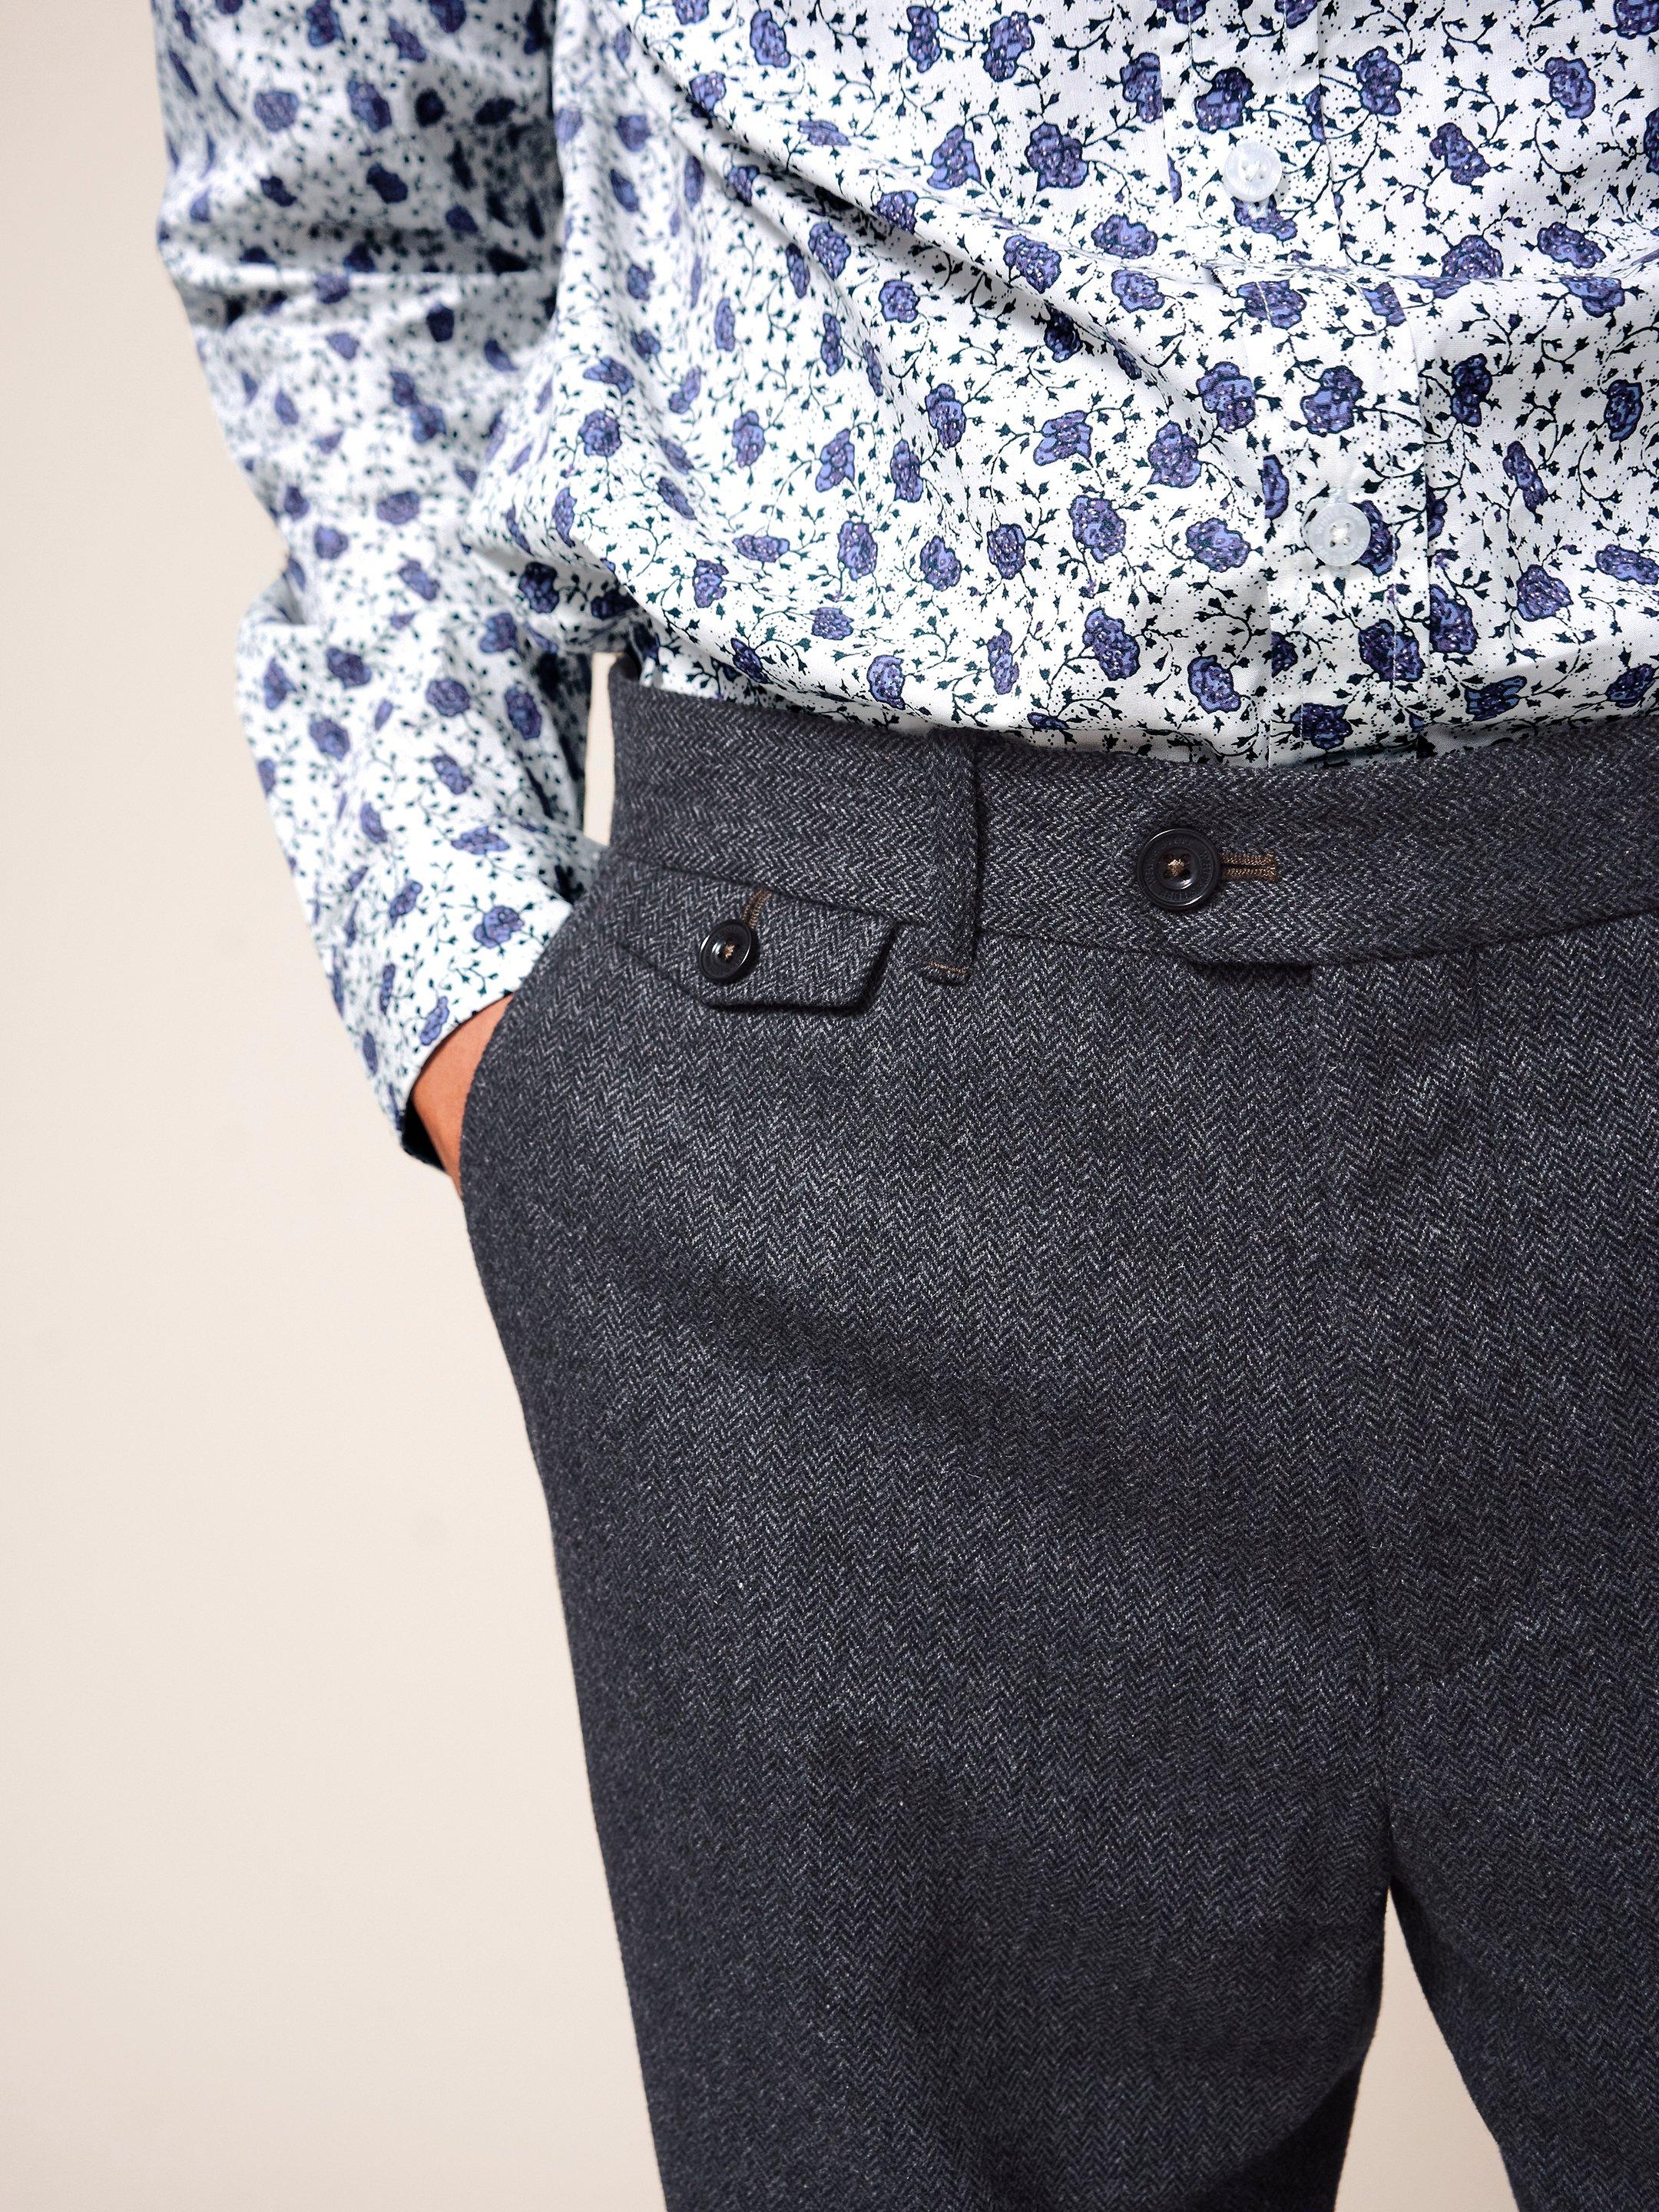 Heath Trouser in CHARC GREY - MODEL DETAIL